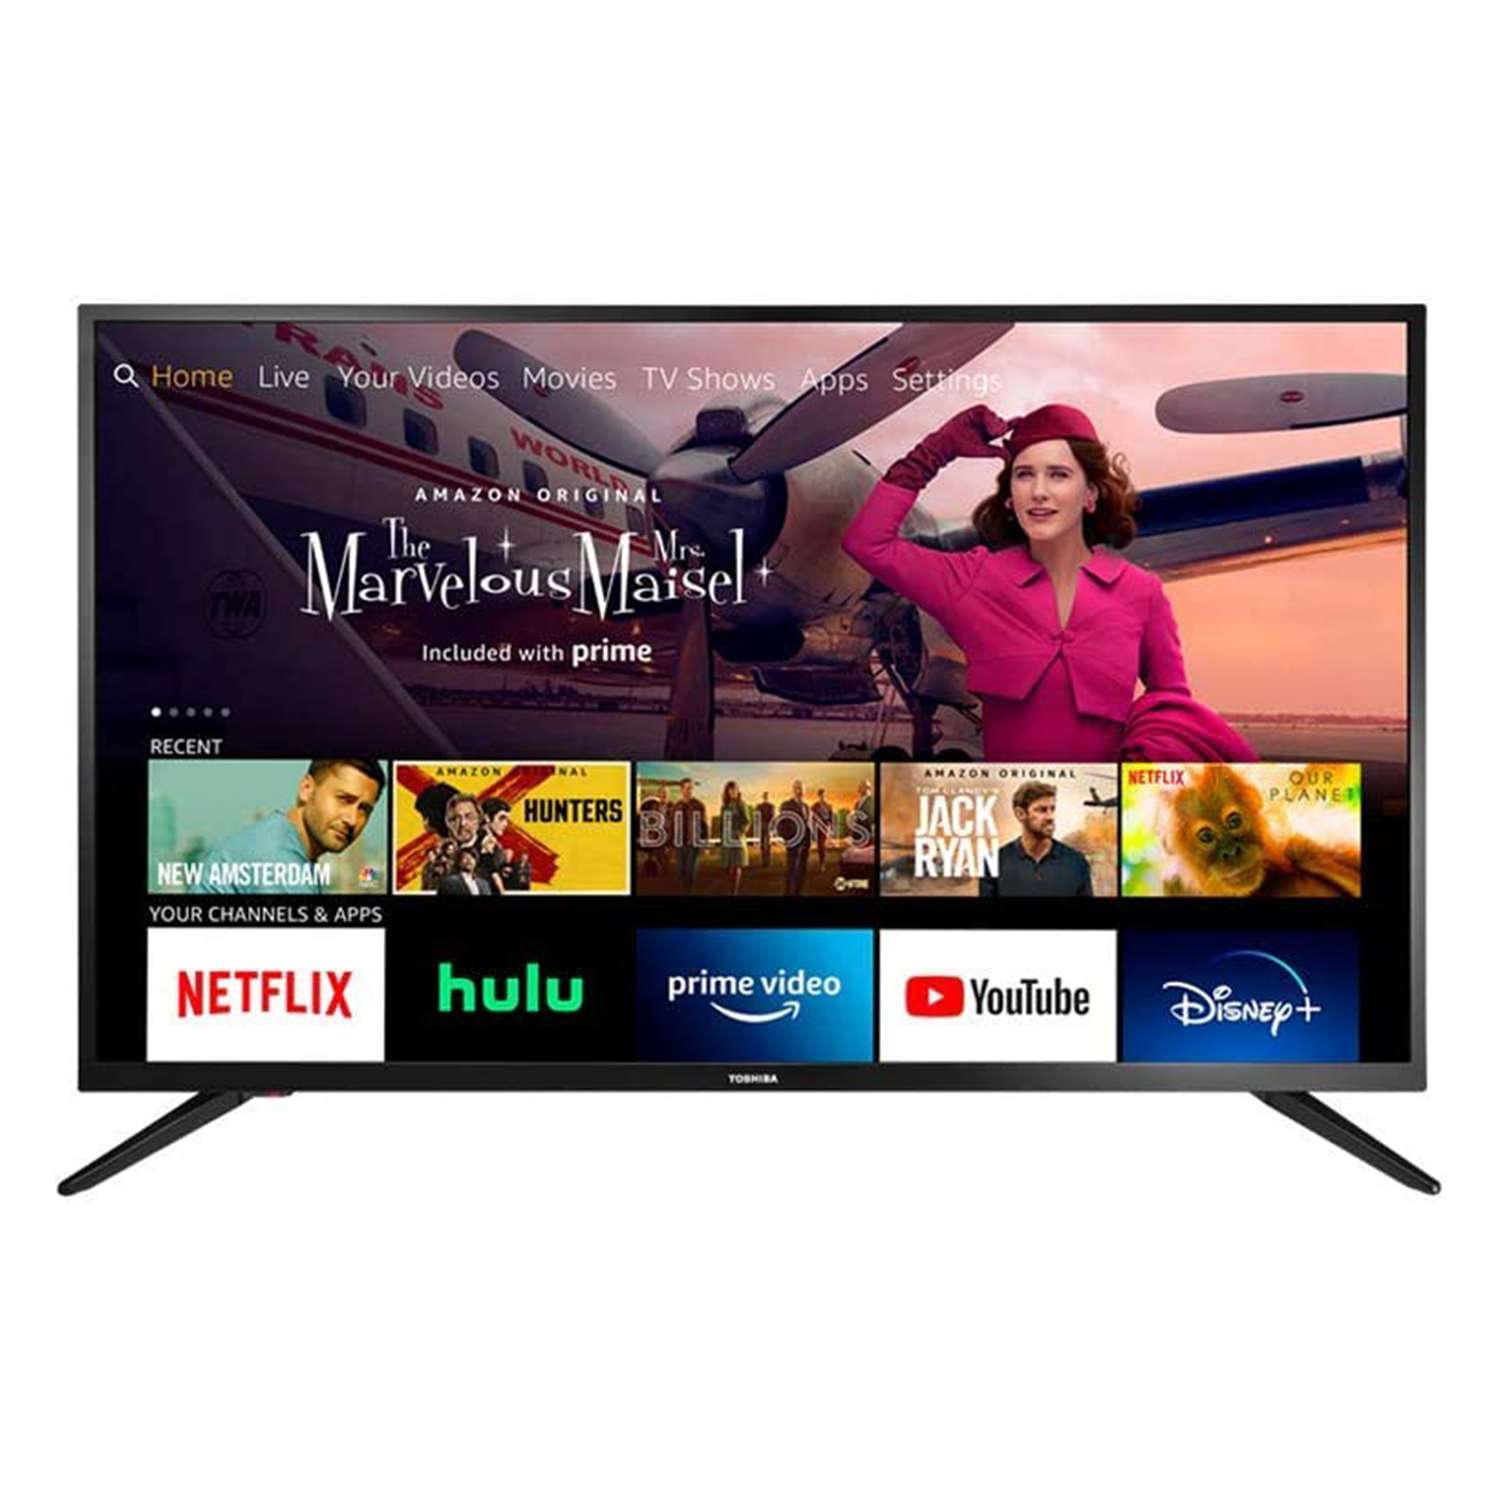 Smart TVs on Amazon